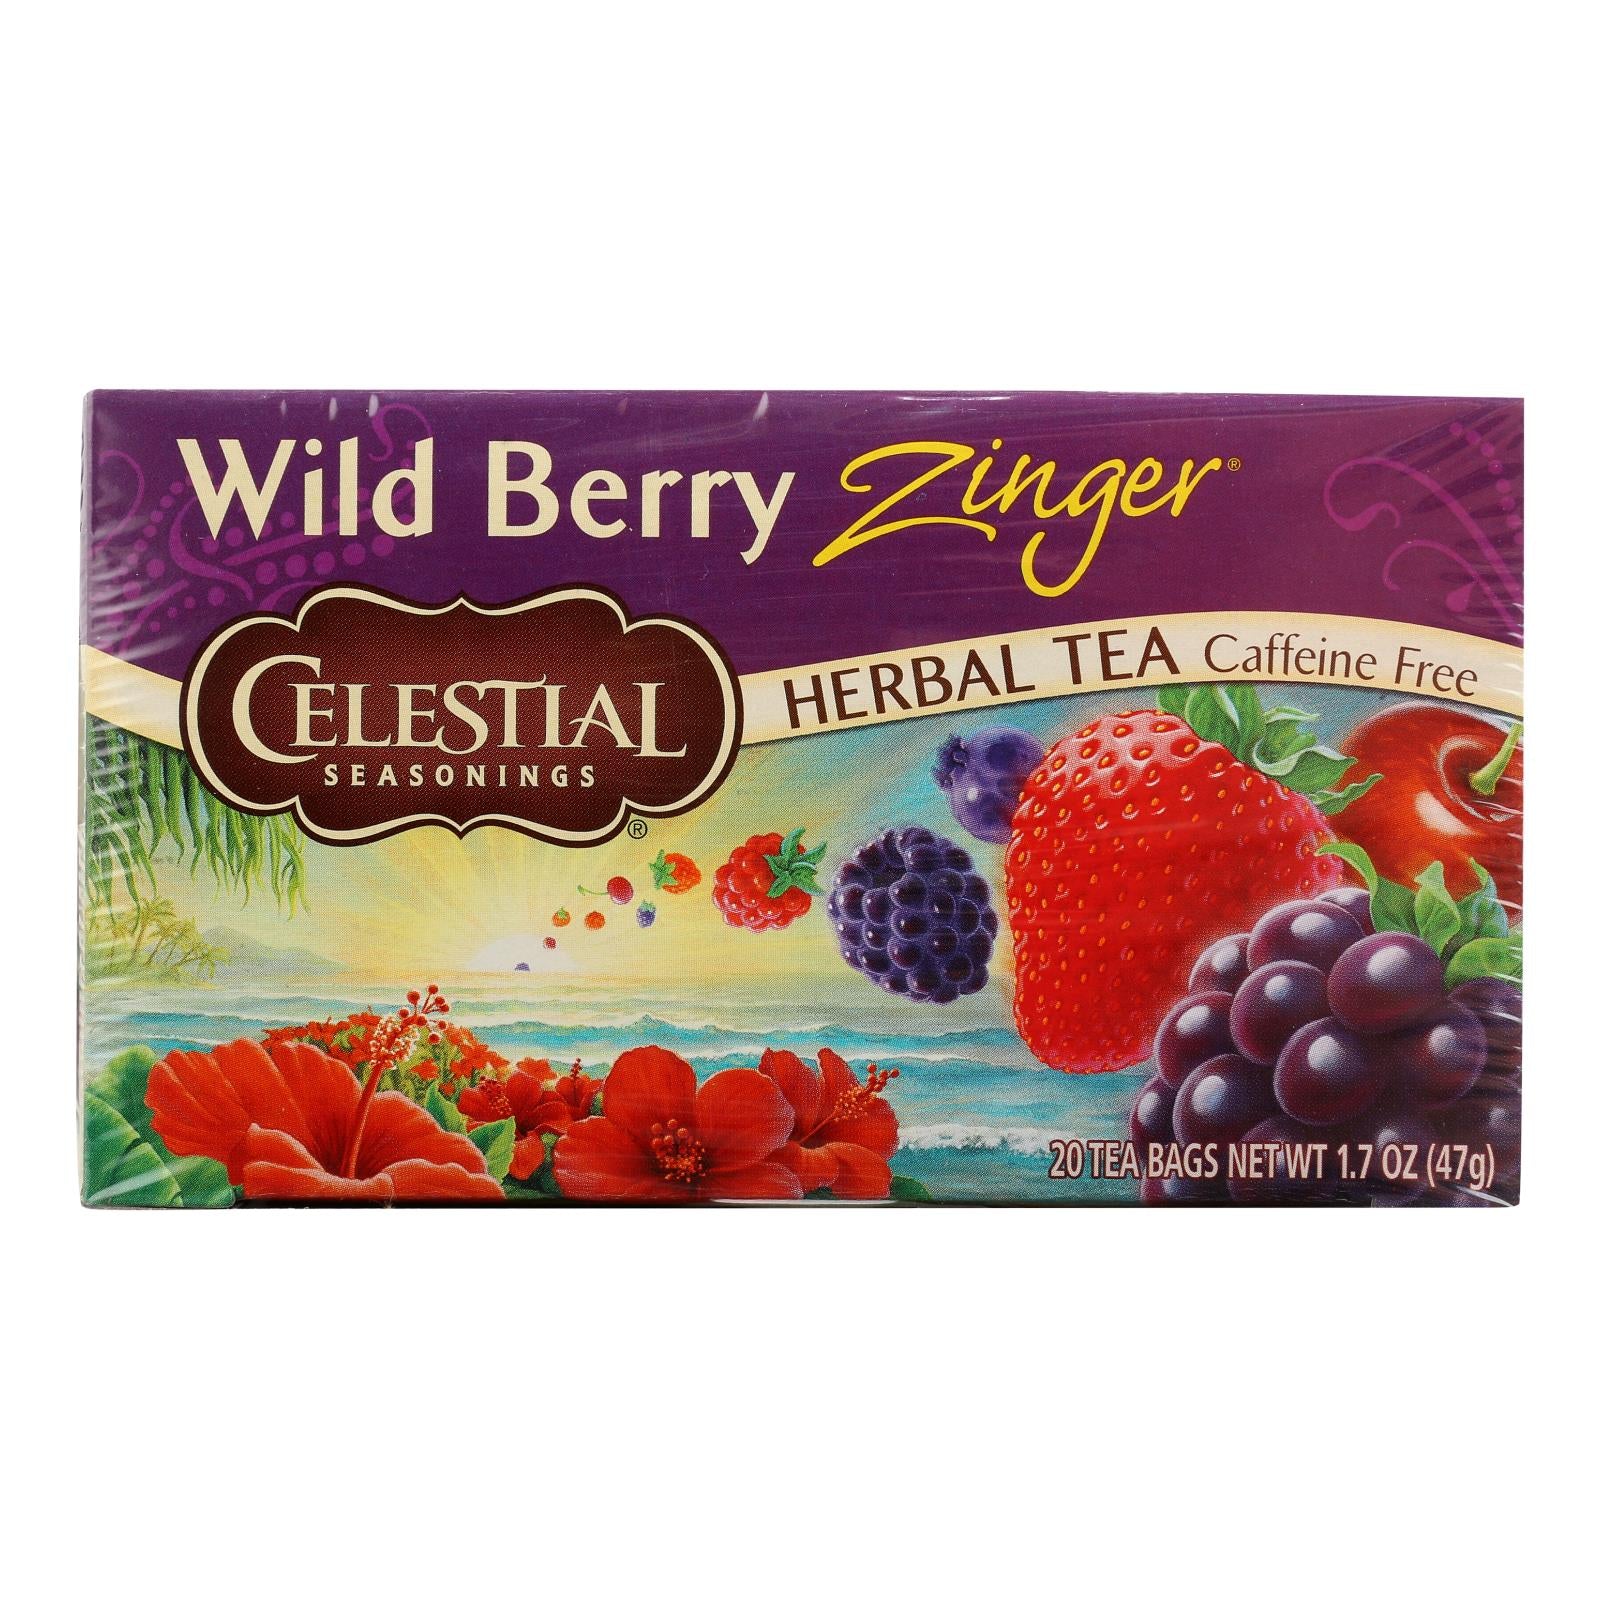 Celestial Seasonings Herb Tea Wild Berry Zinger - 20 Tea Bags - Case of 6